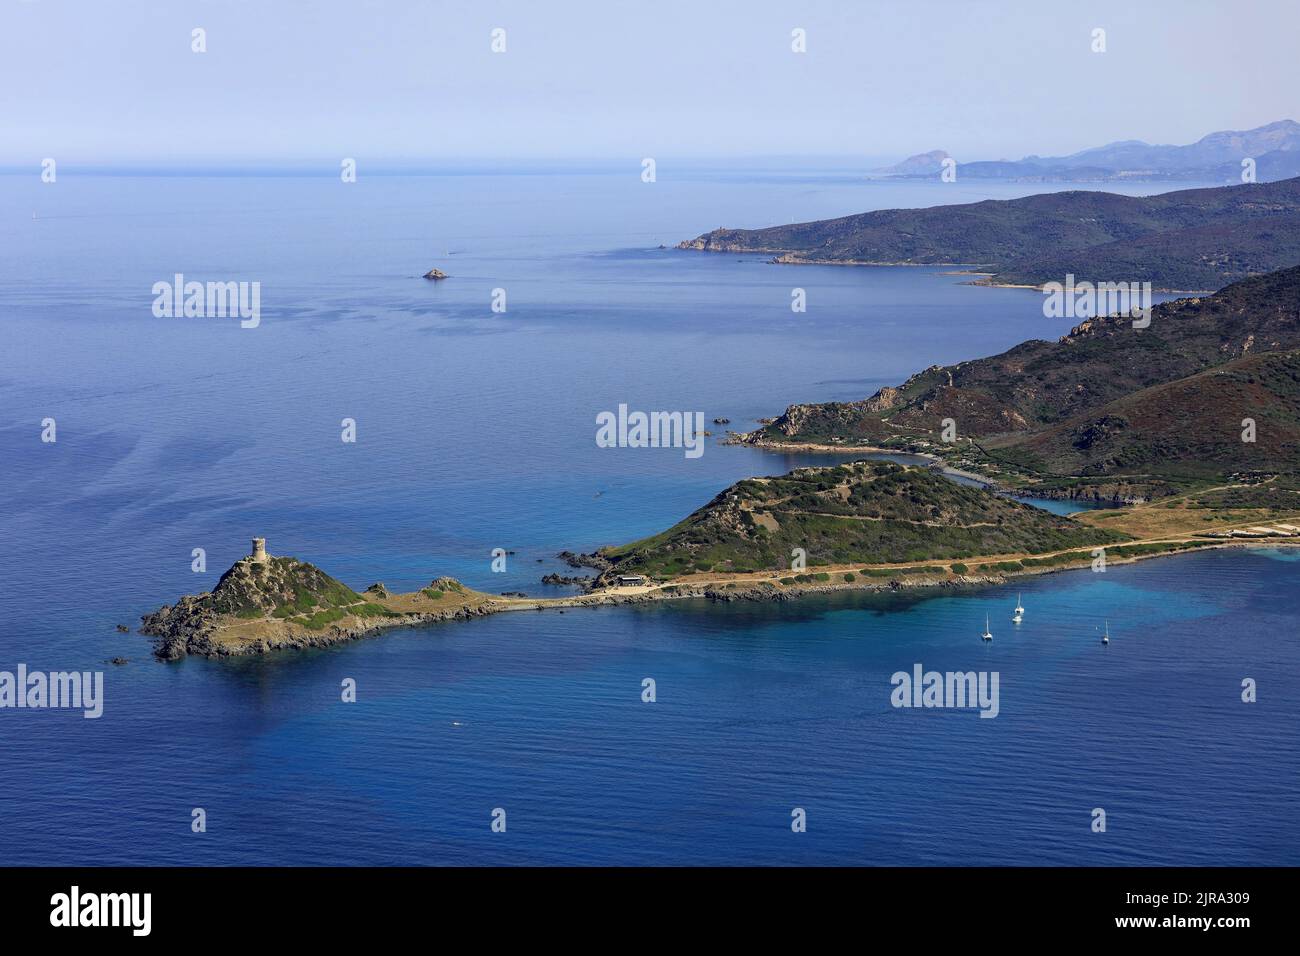 Corse-du-sud, département de la Corse-du-sud, archipel des Sanguinaires : vue aérienne de l'ancrage de la péninsule de Parata avec sa tour génoise b Banque D'Images